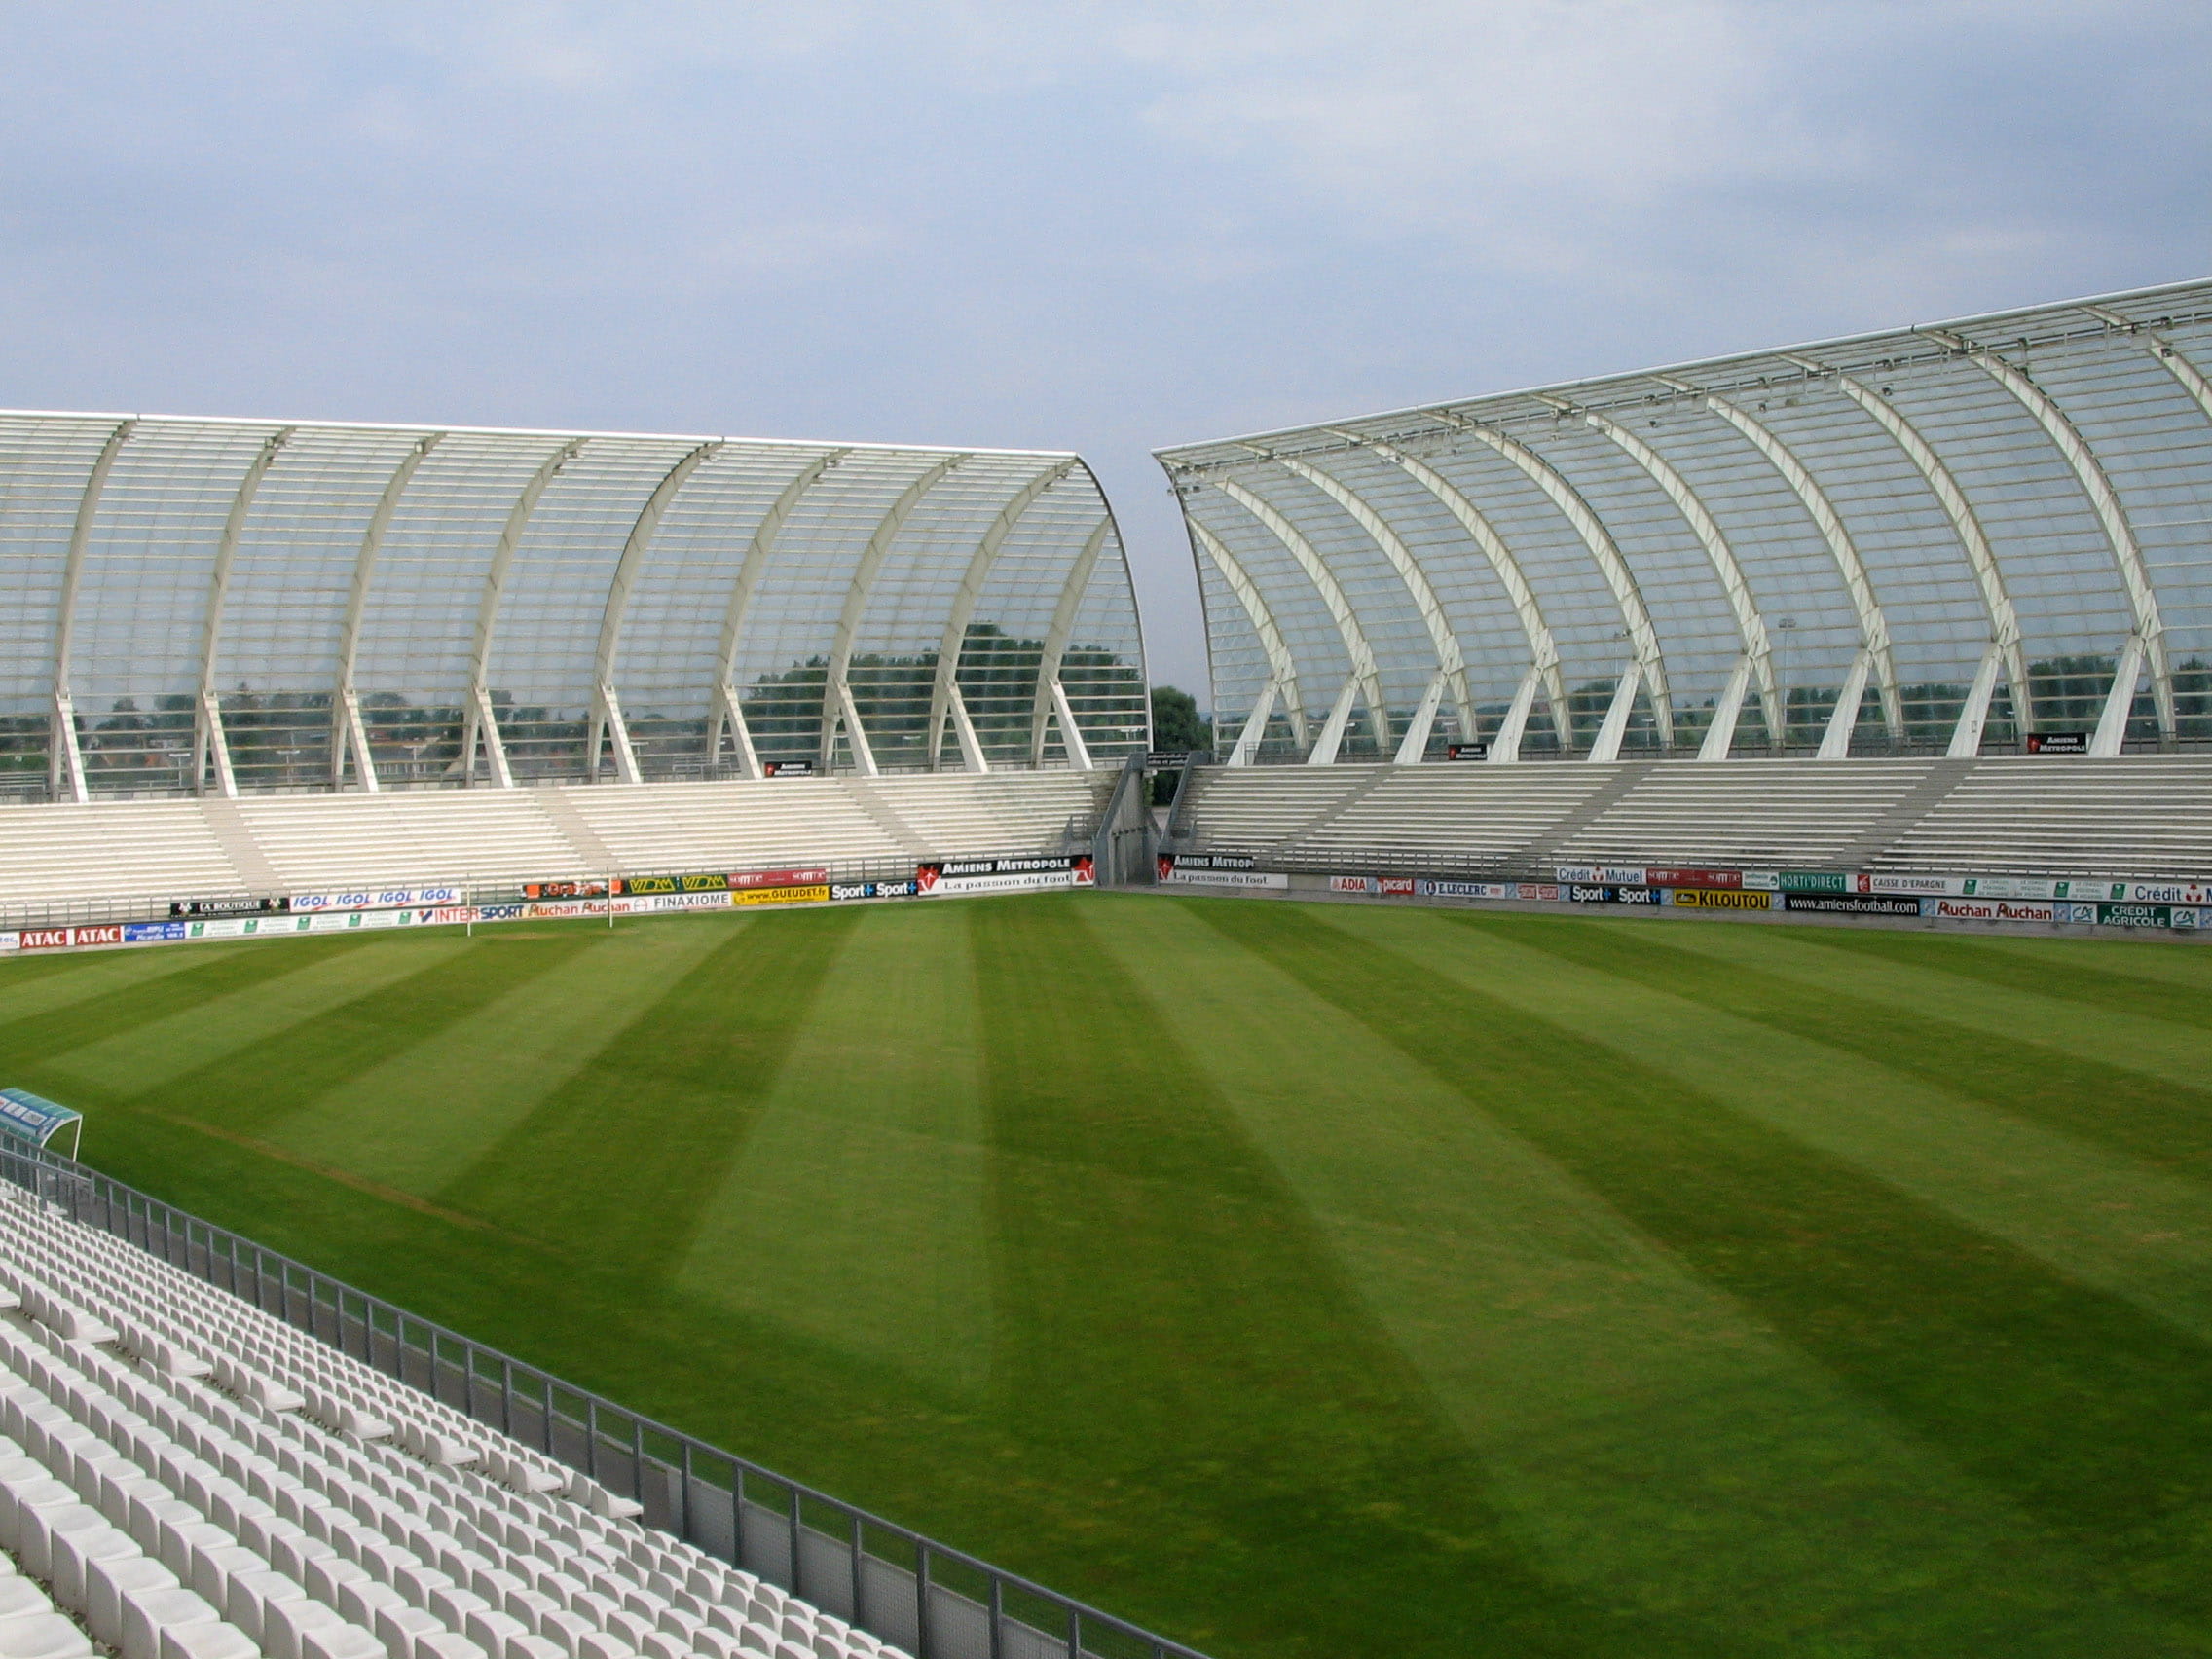 Stade de la Licorne in Amiens, France, photos, public domain